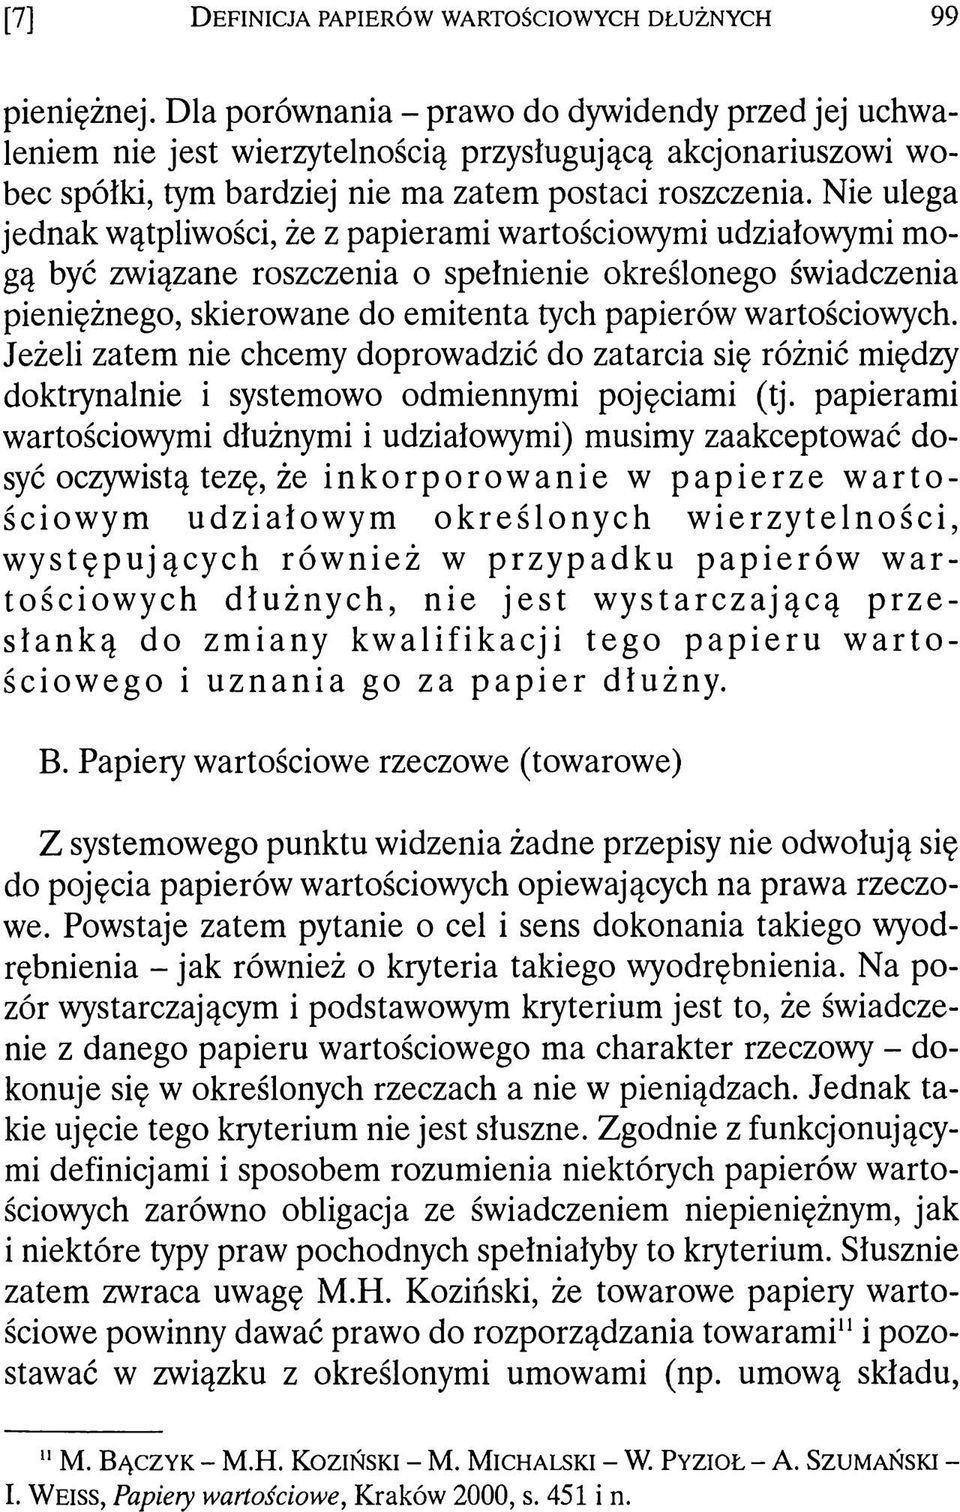 Aleksander Chłopecki Definicja papierów wartościowych dłużnych. Zeszyty  Prawnicze 3/2, - PDF Darmowe pobieranie